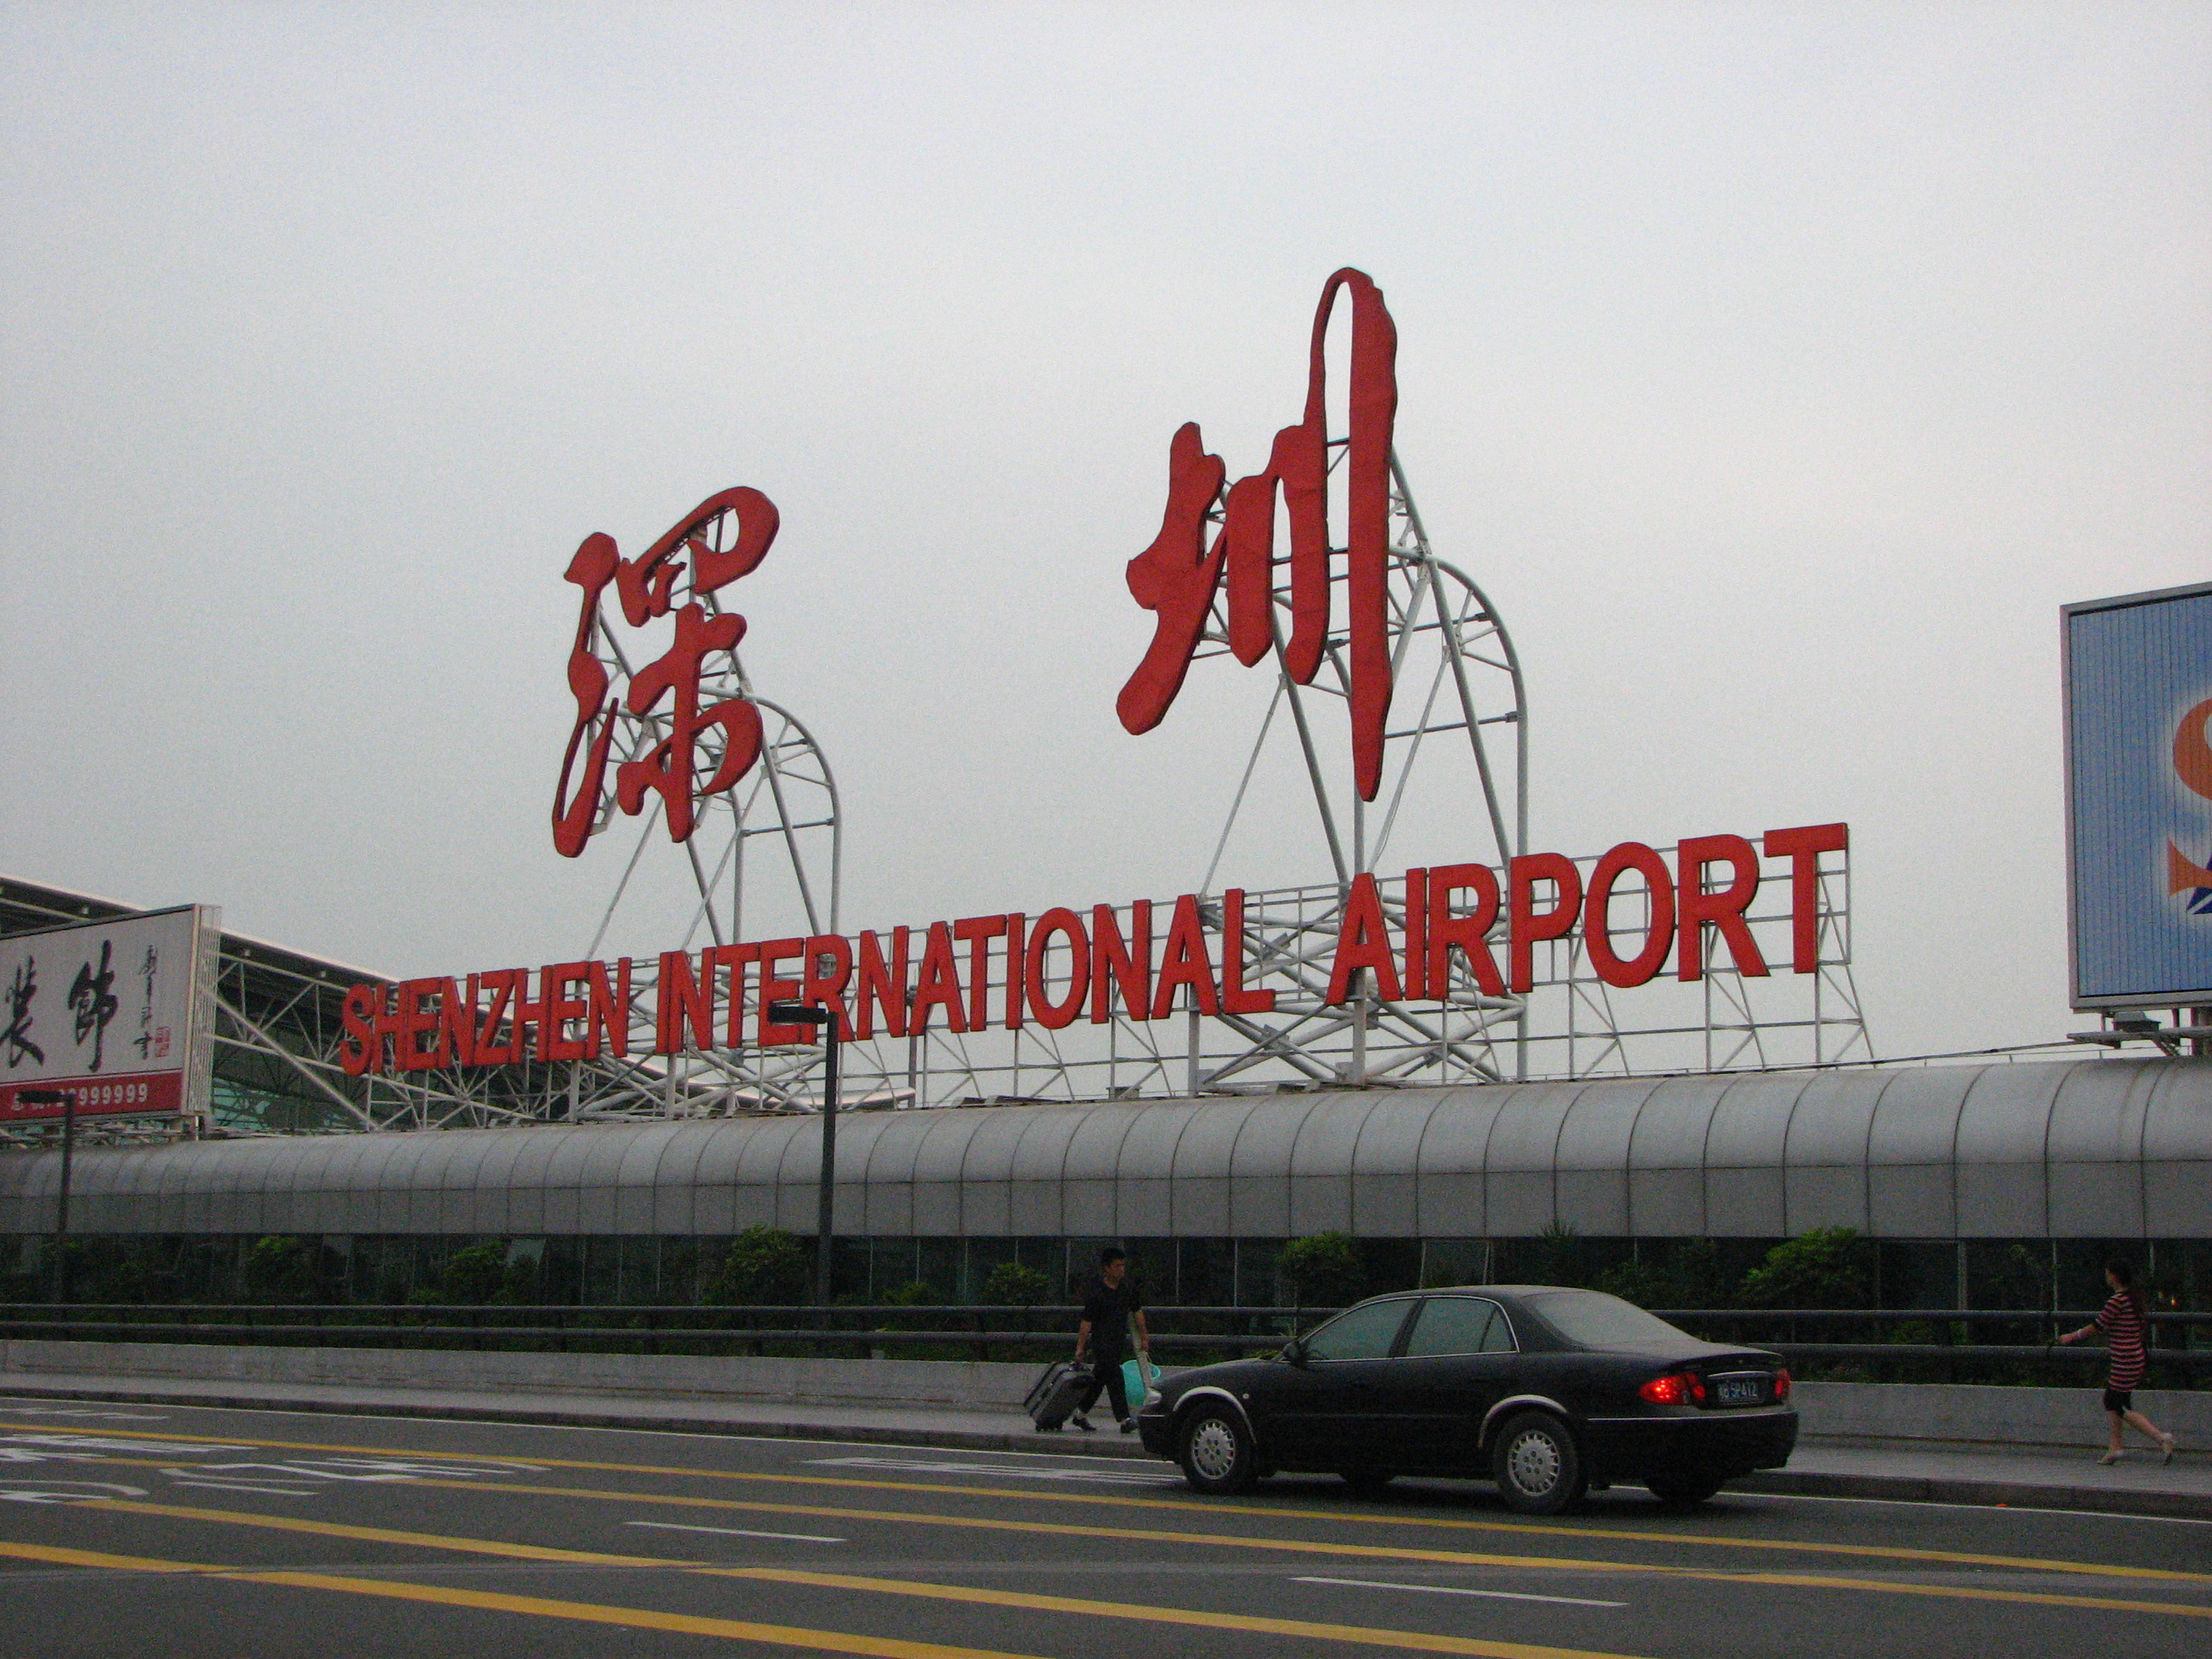 Shenzhen Airport